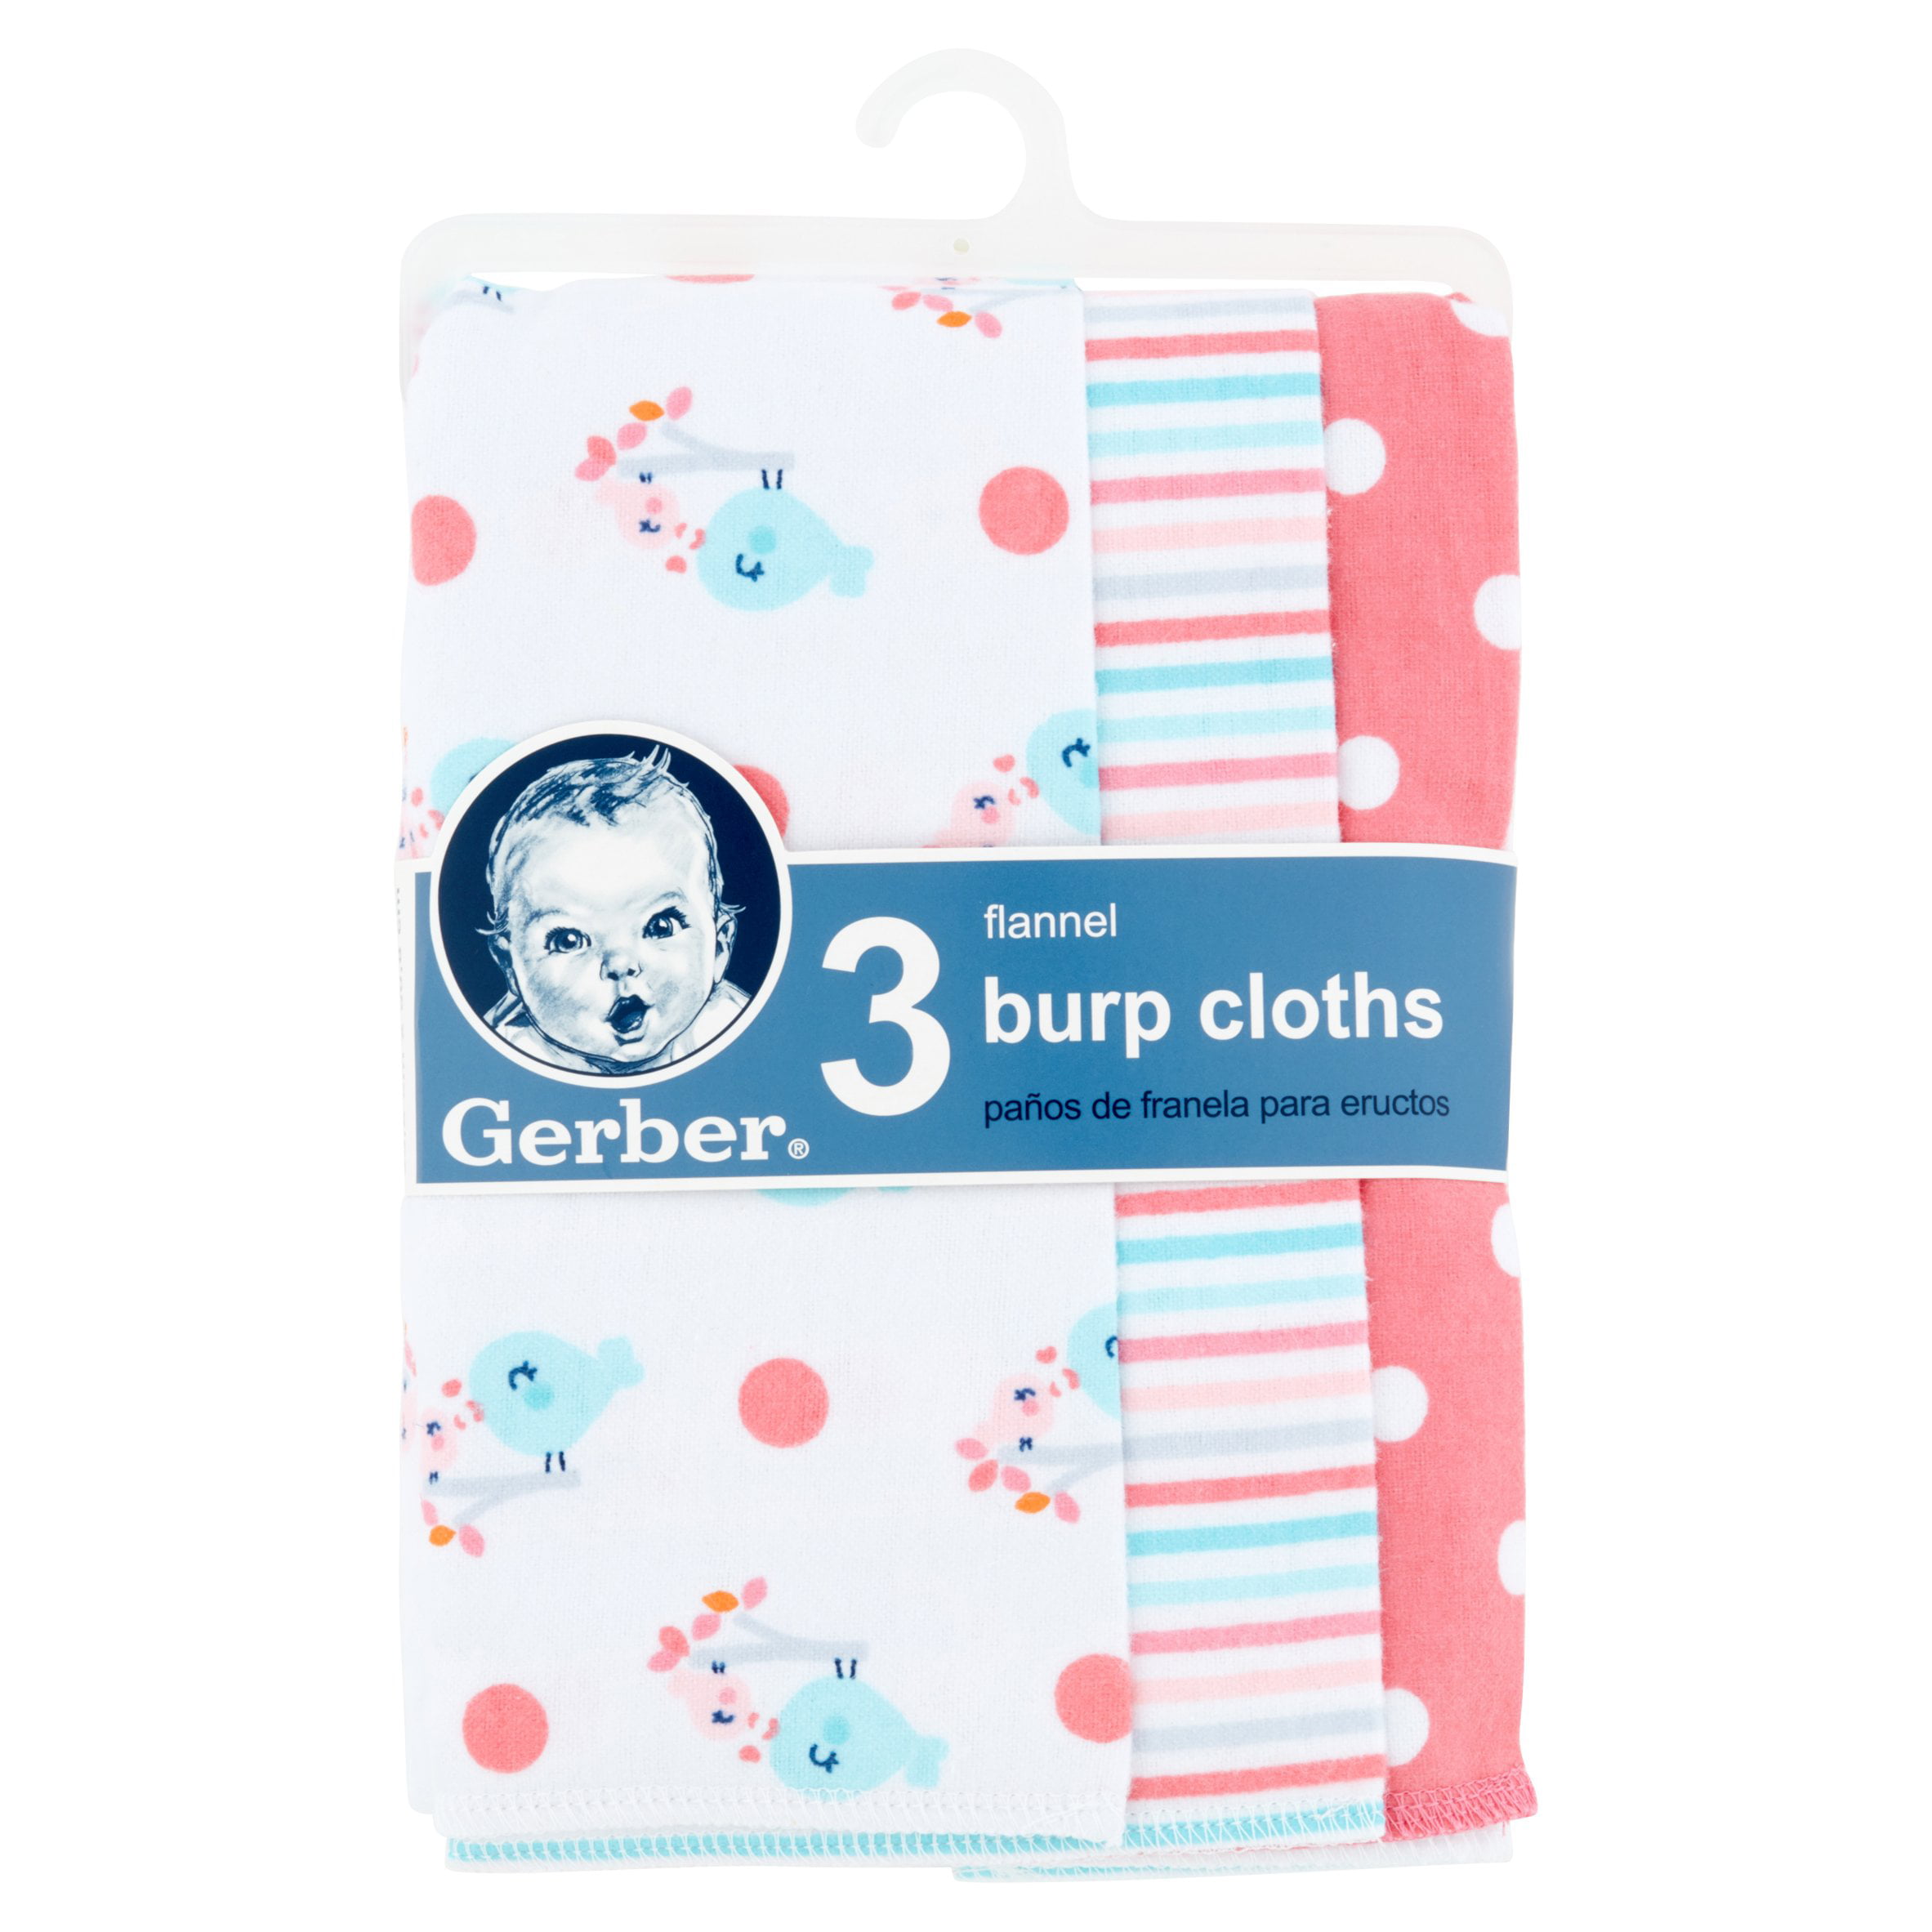 gerber baby flannel burp cloths